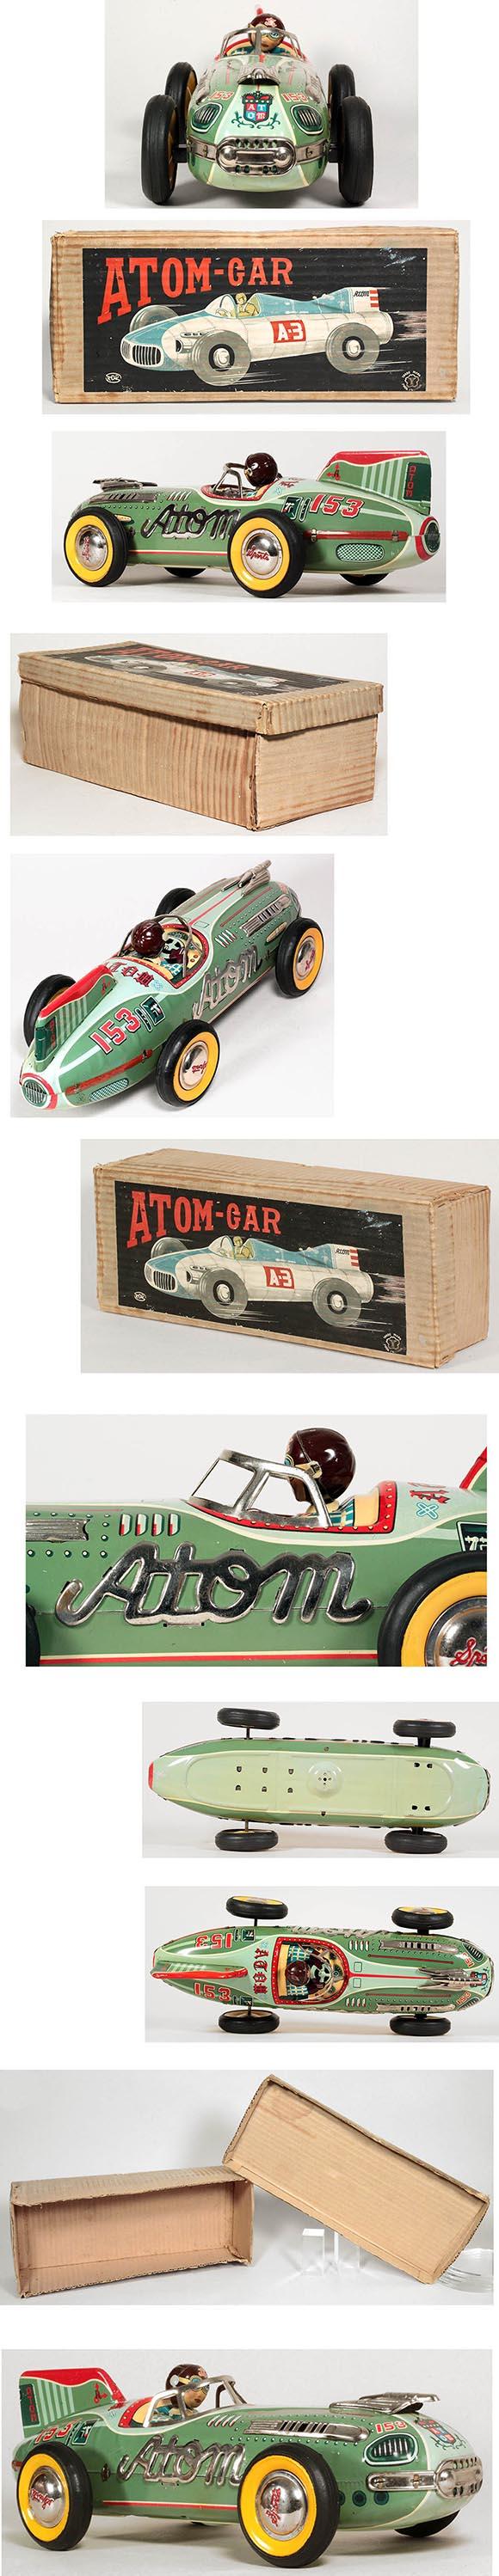 c.1955 Yonezawa, #153 Atom-Car in Original Box